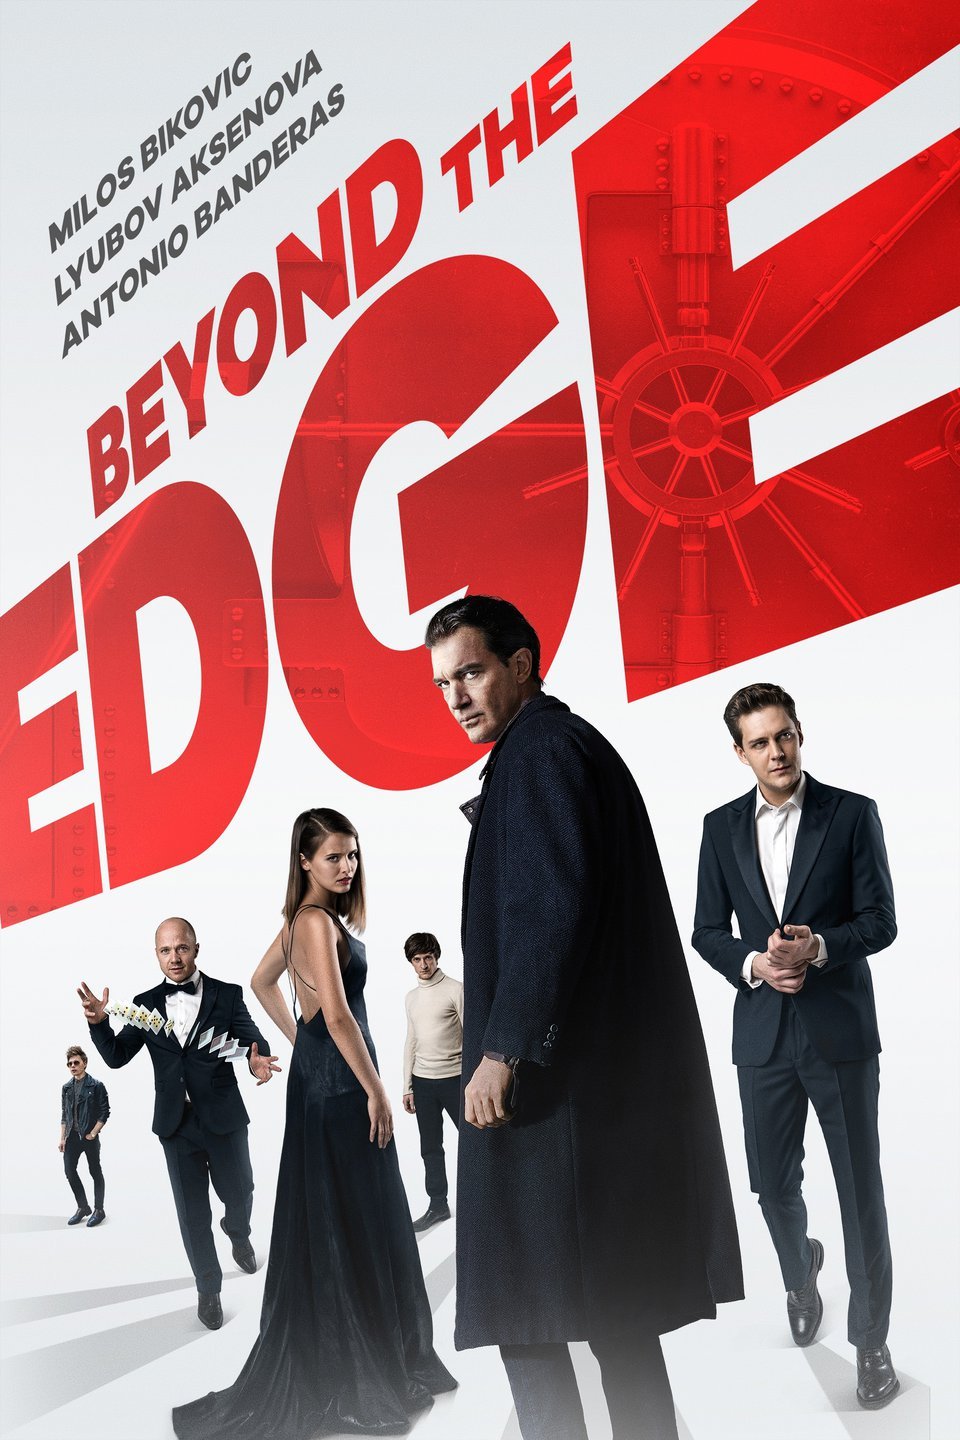 [ฝรั่ง] Beyond The Edge (2018) เกมเดิมพัน คนพลังเหนือโลก [1080p] [พากย์ไทยมาสเตอร์ + เสียงอังกฤษ DTS] [บรรยายไทย + อังกฤษ] [เสียงไทย + ซับไทย] [OPENLOAD]